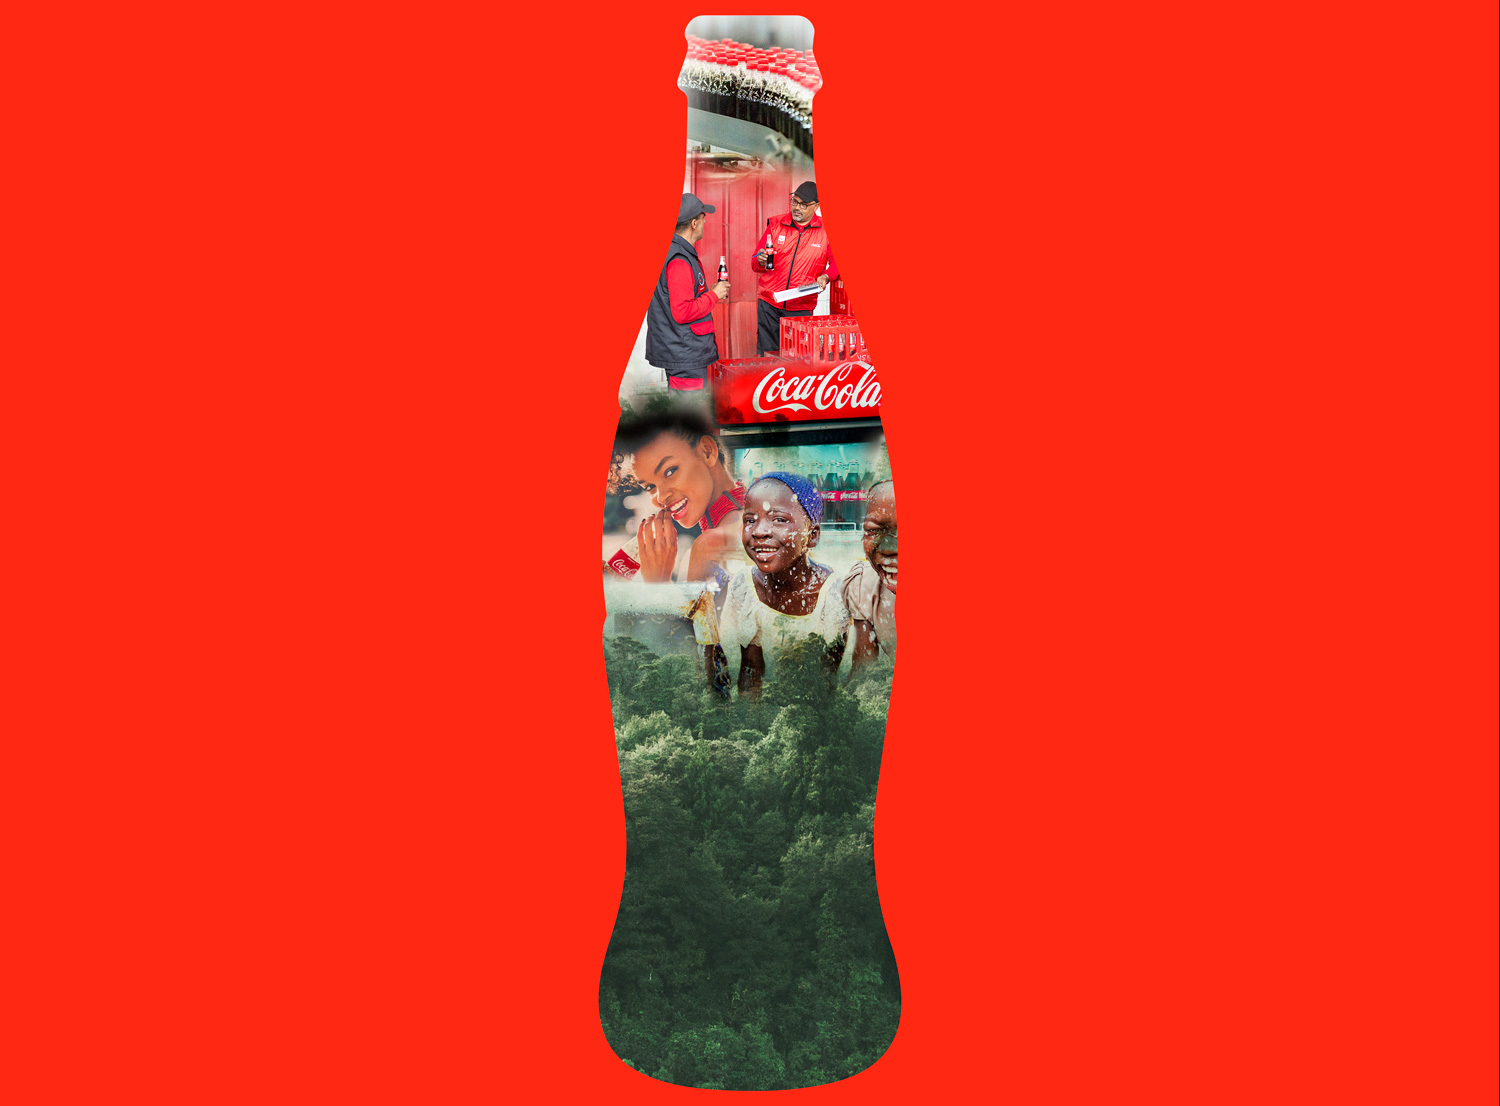 ECCBC coke bottle